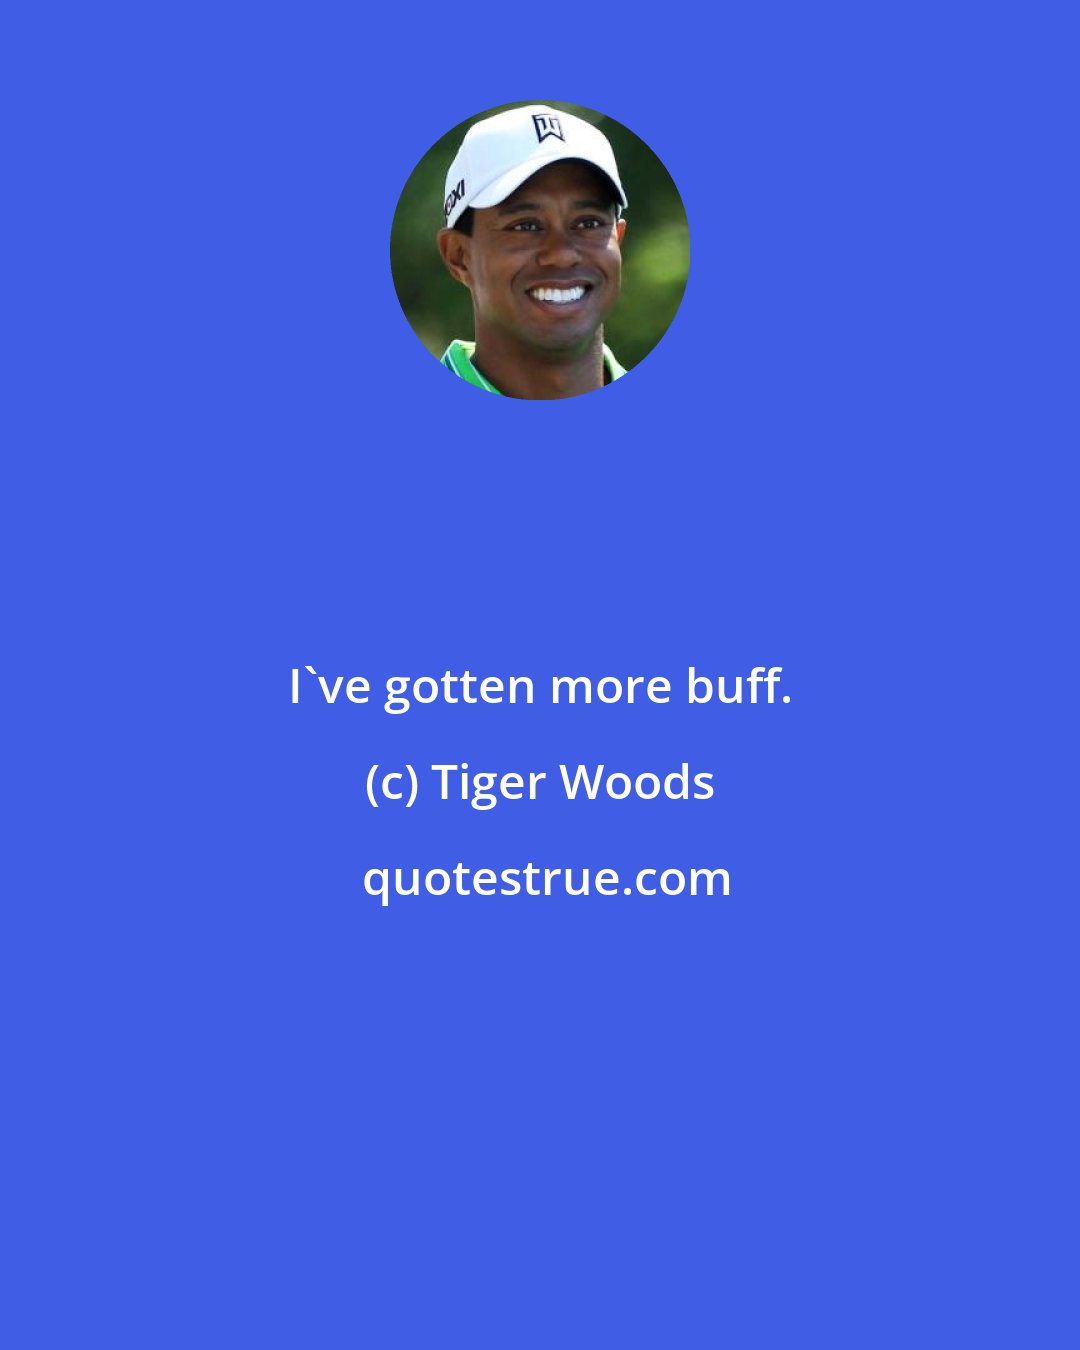 Tiger Woods: I've gotten more buff.